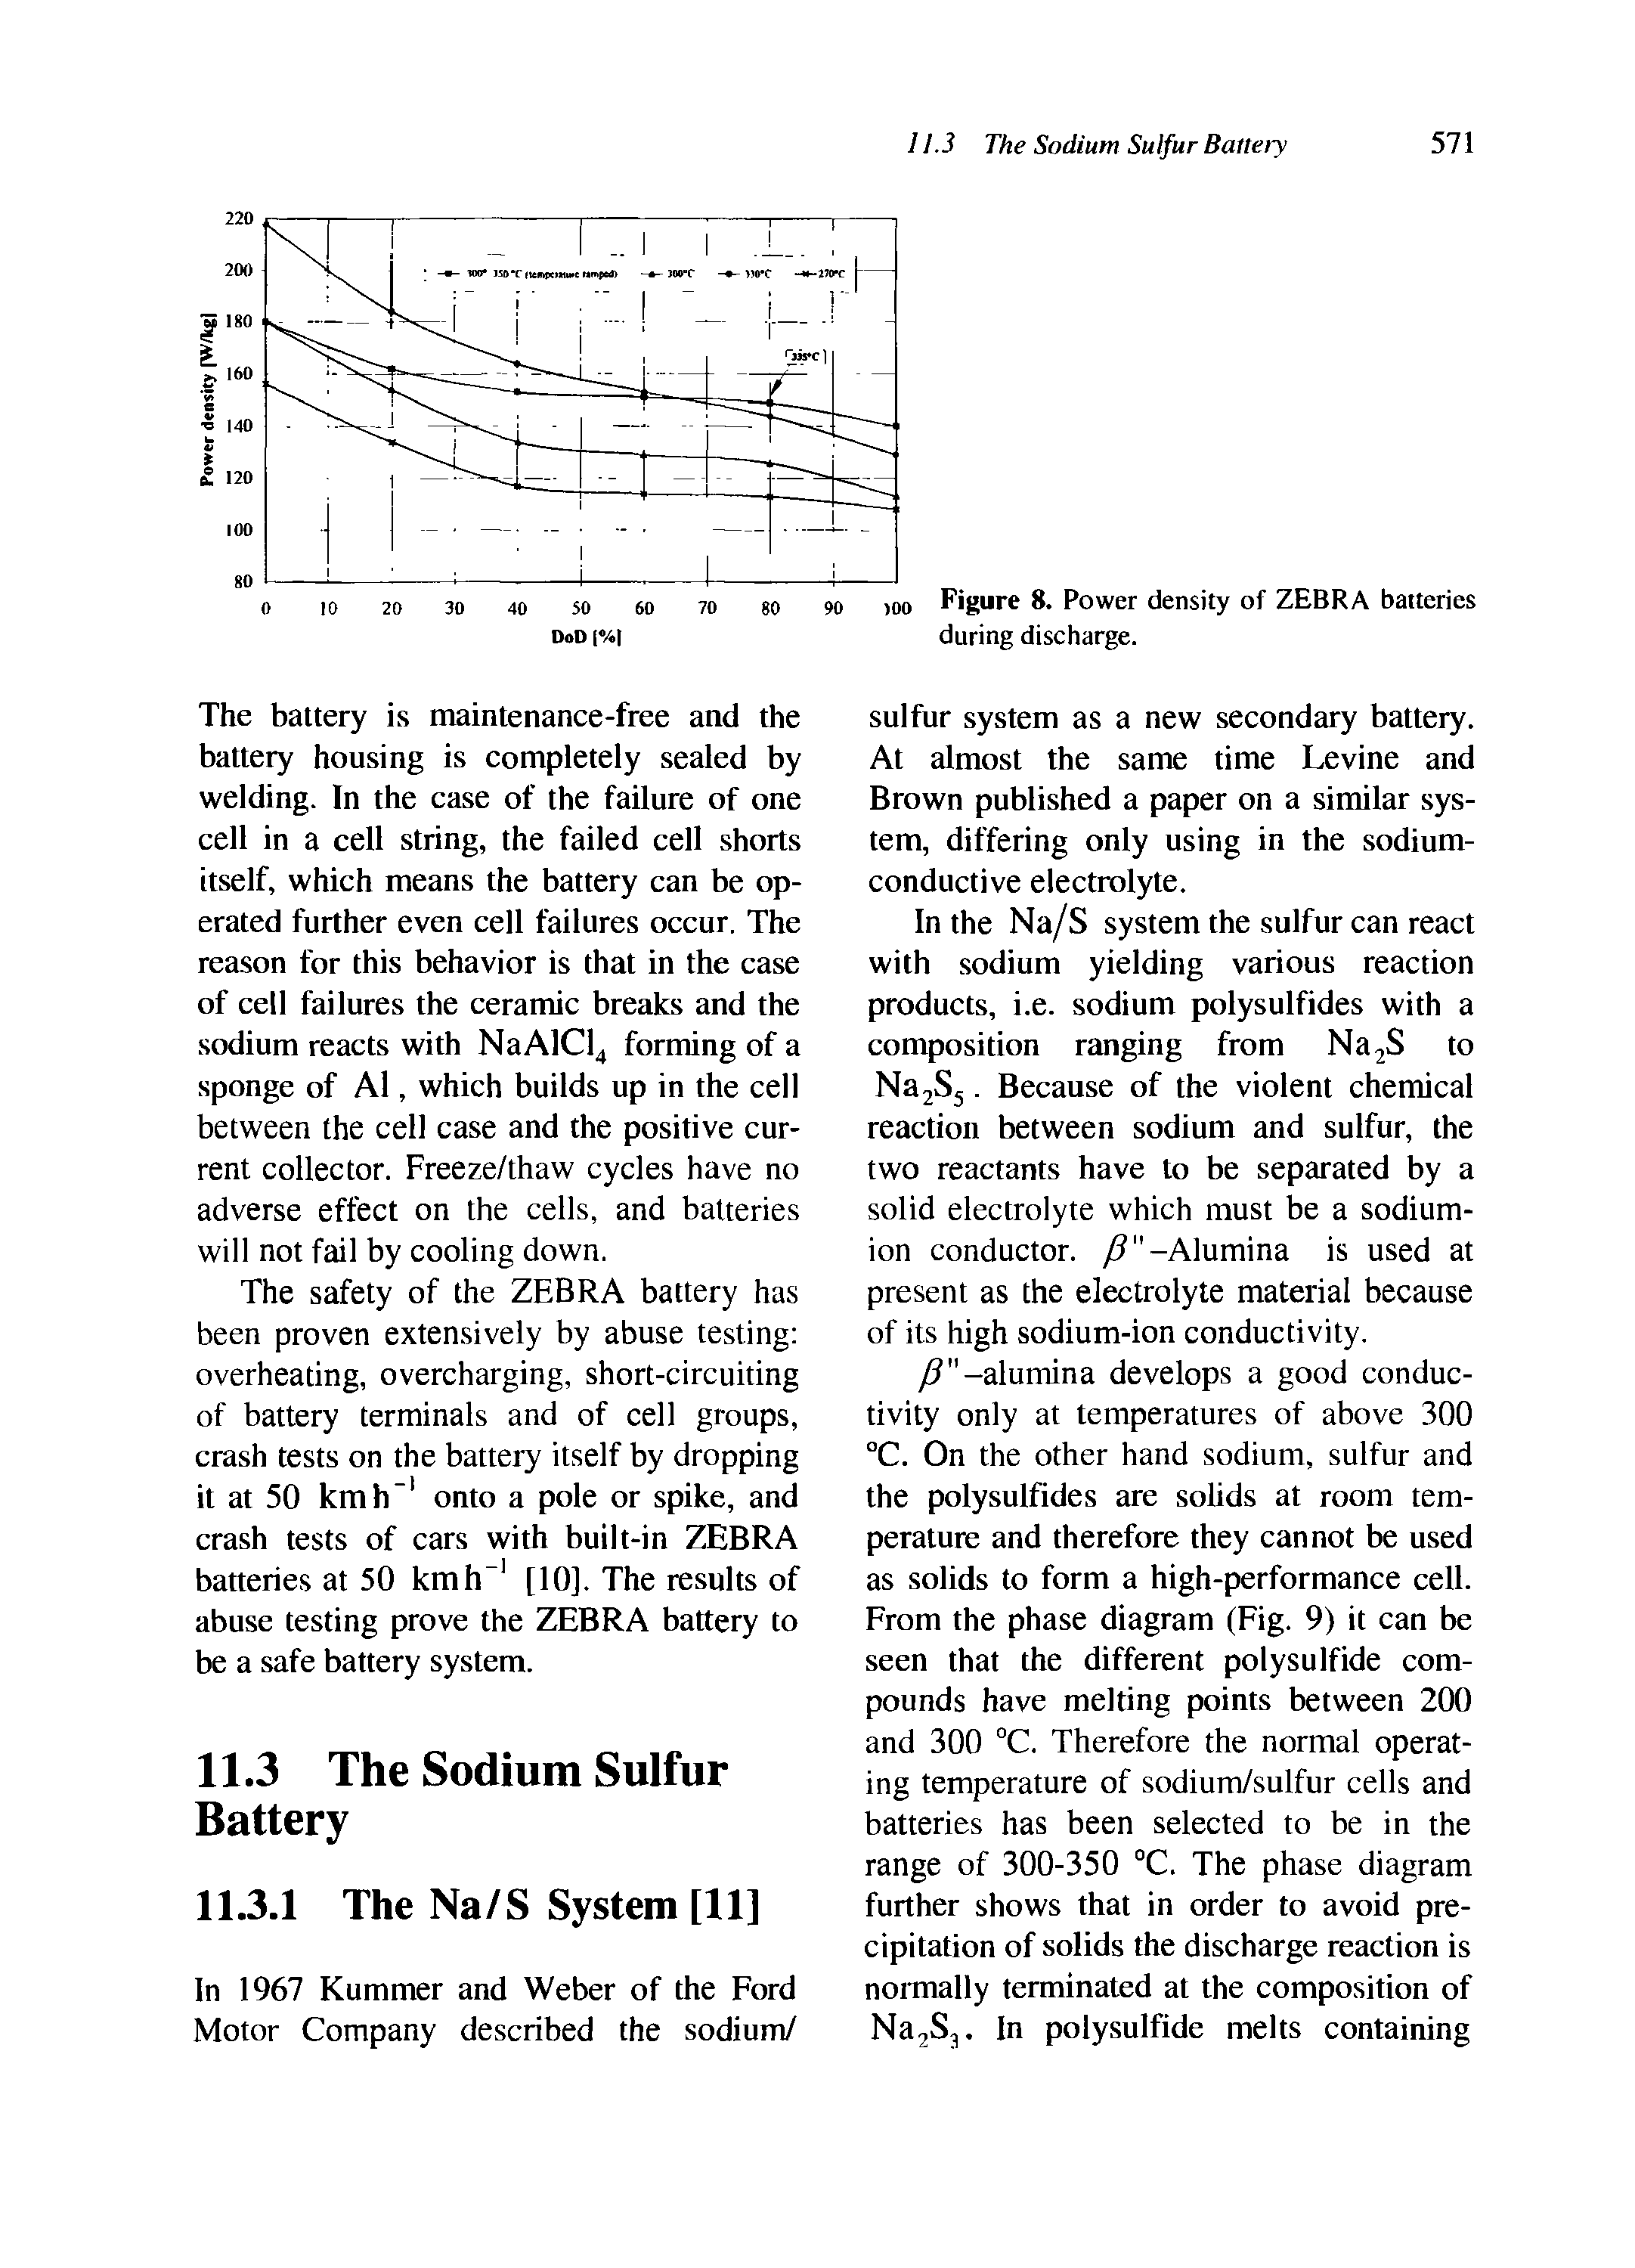 Figure 8. Power density of ZEBRA batteries during discharge.